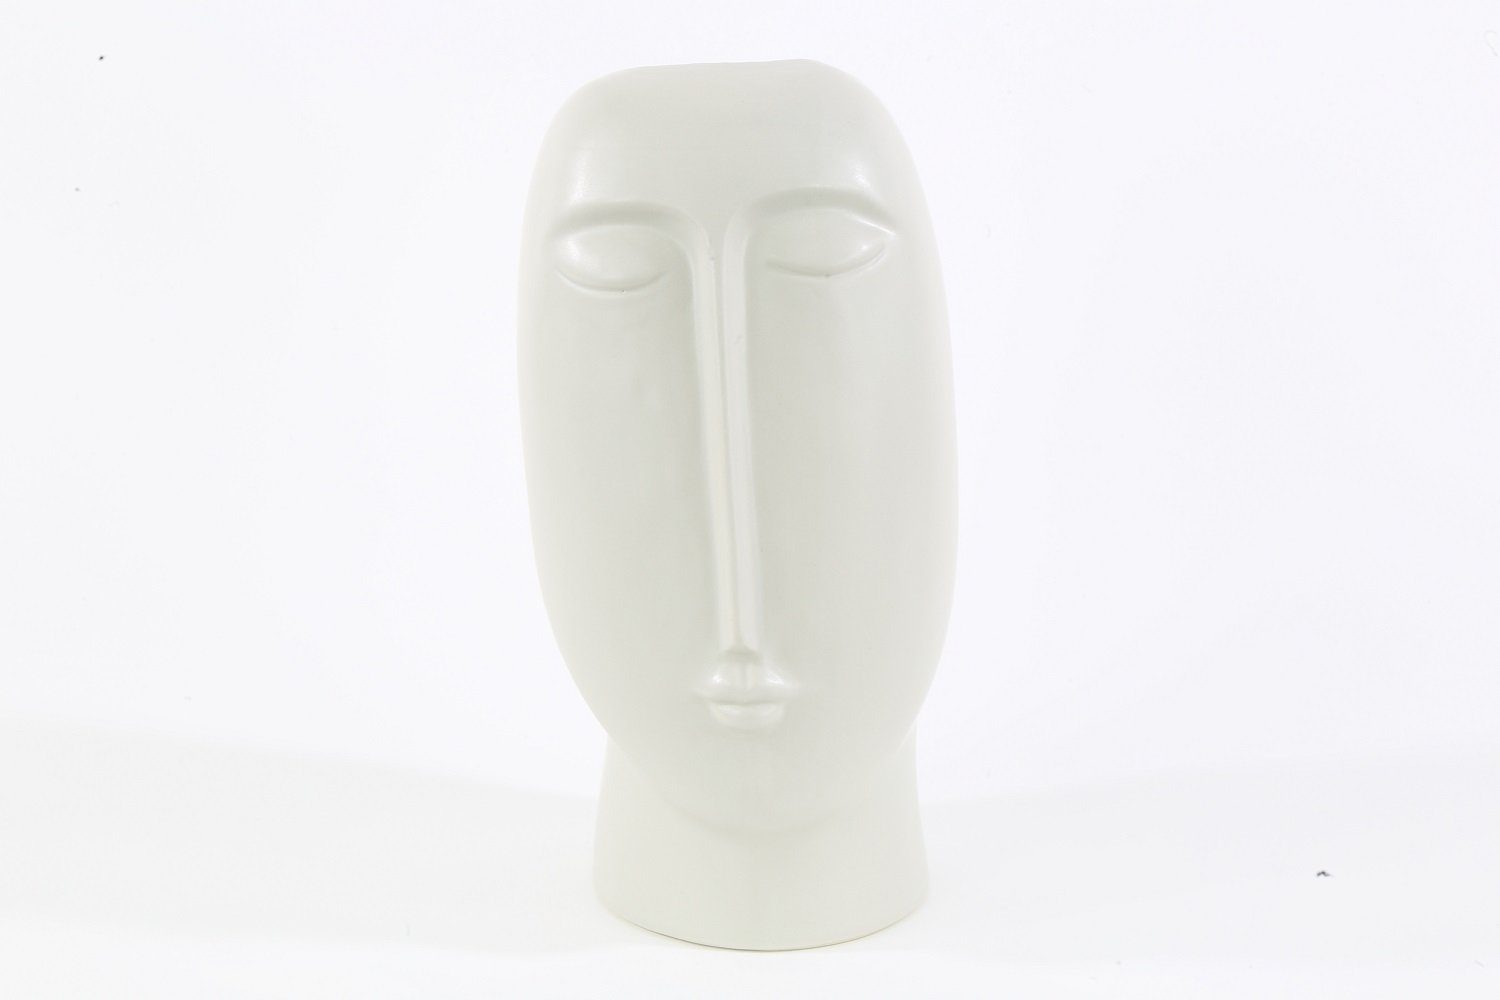 Parts4Living Dekovase Keramik Vase mit Gesicht Tischvase Blumenvase Keramikvase im modernen Stil weiß 14x25 cm